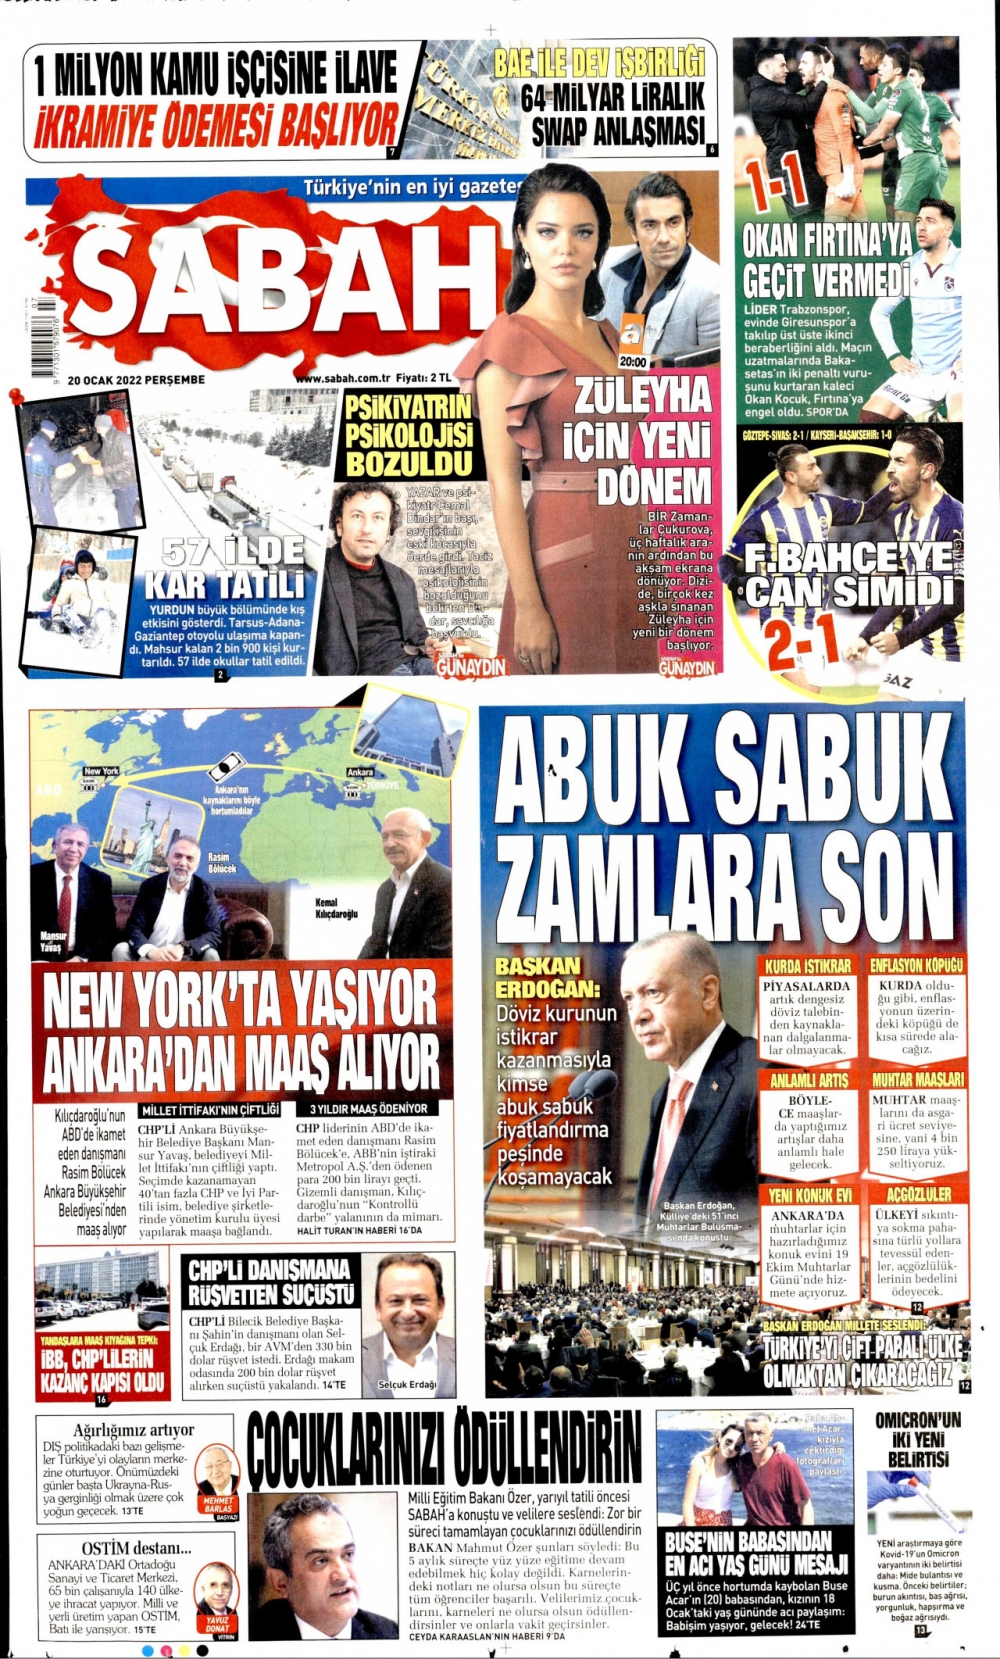 Günün Gazete Manşetleri 20 Ocak 2022 Gazeteler Ne Diyor? 2